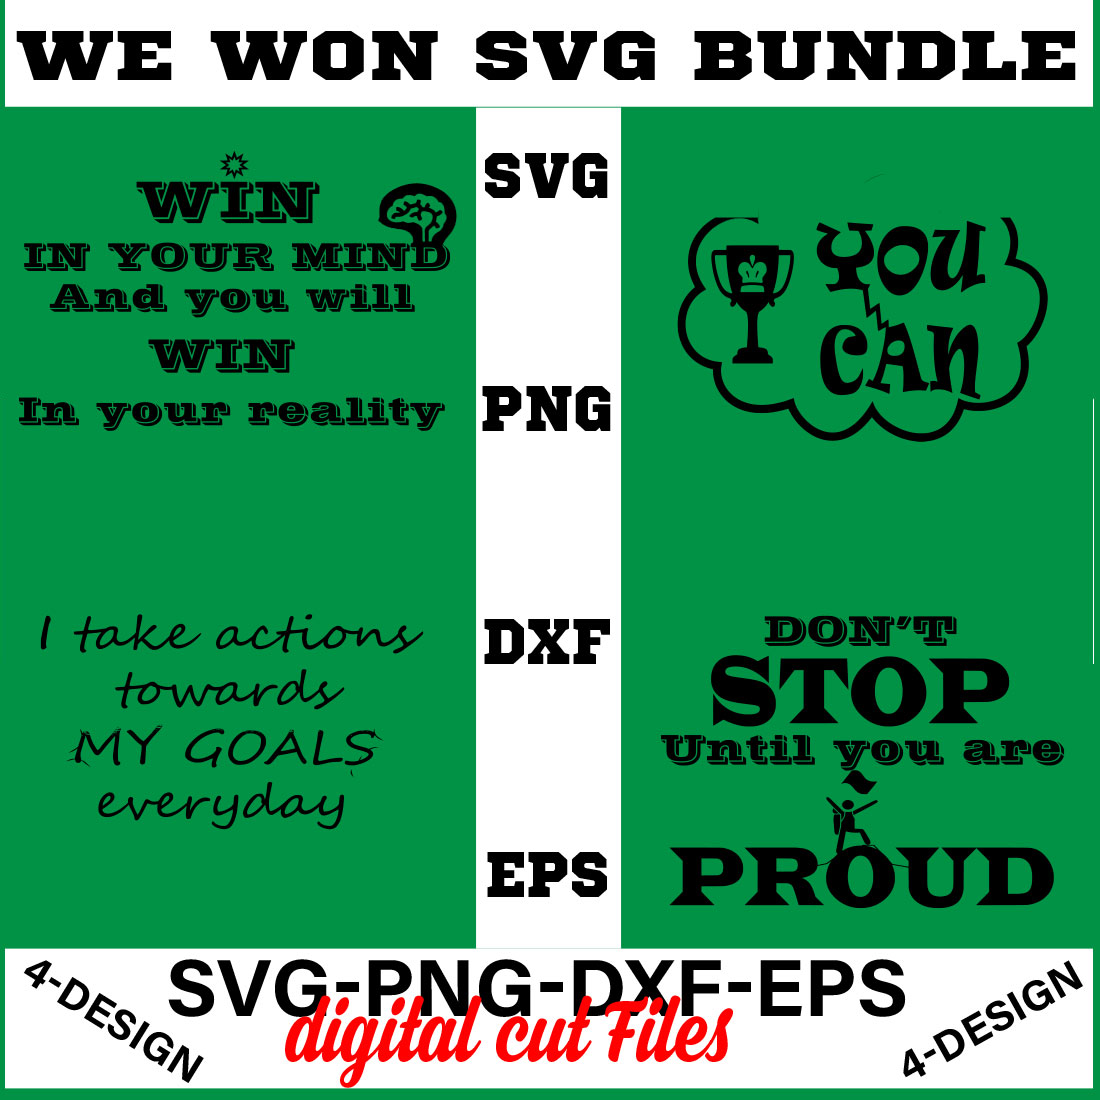 We Won SVG T-shirt Design Bundle Volume-09 cover image.